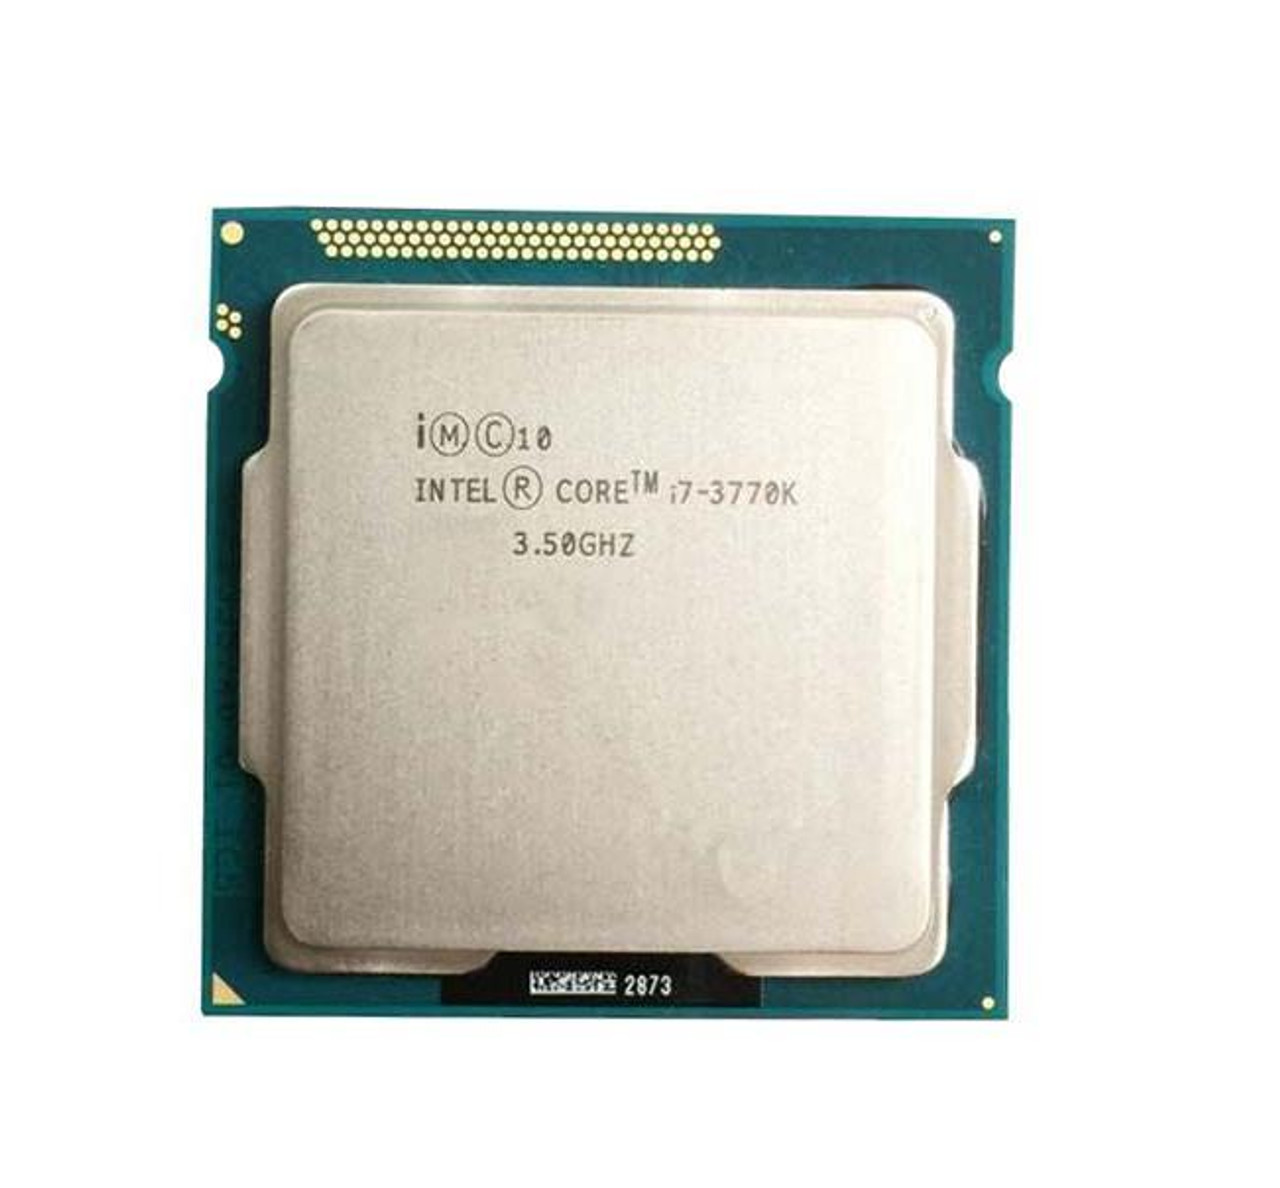 Intel-Core i7-3770K Quad-Core 3.50GHz 5.00GT/s DMI 8MB L3 Cache Socket LGA1155 Processor